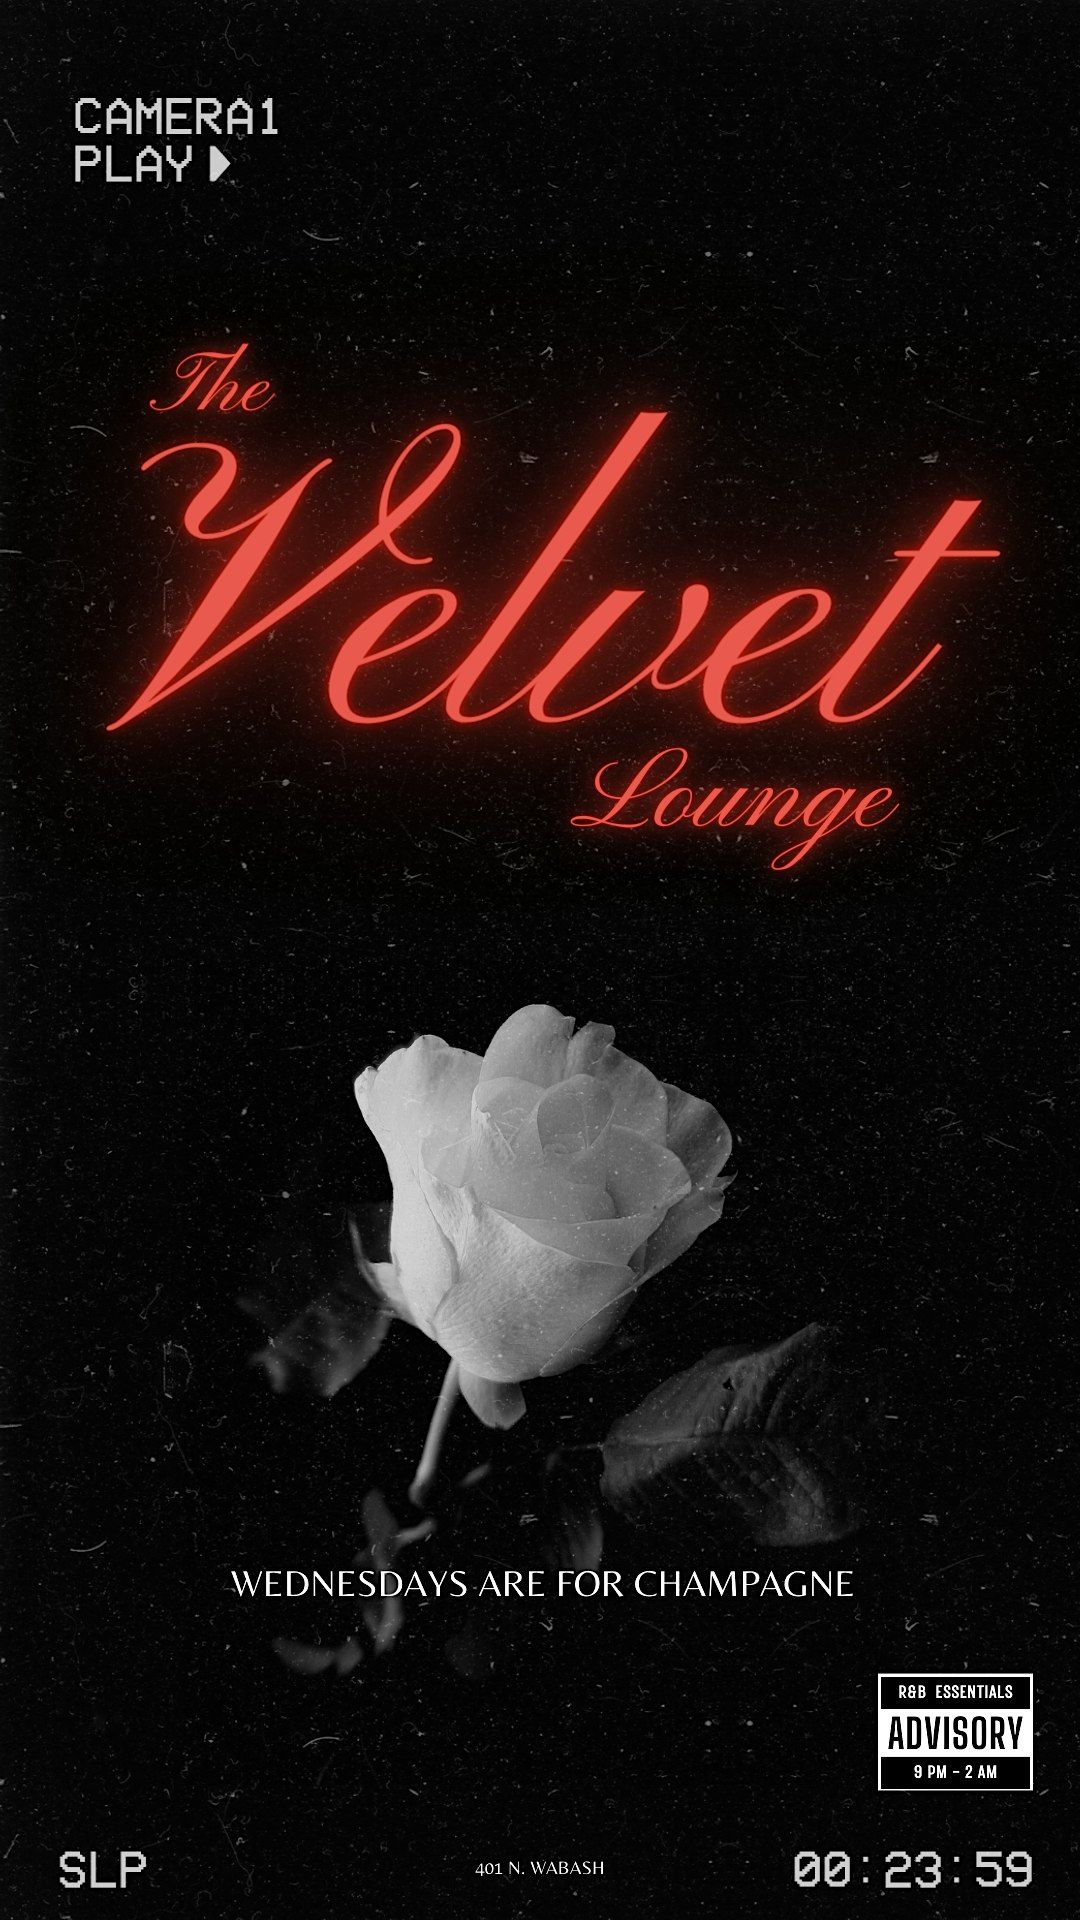 The Velvet Lounge @ Rebar